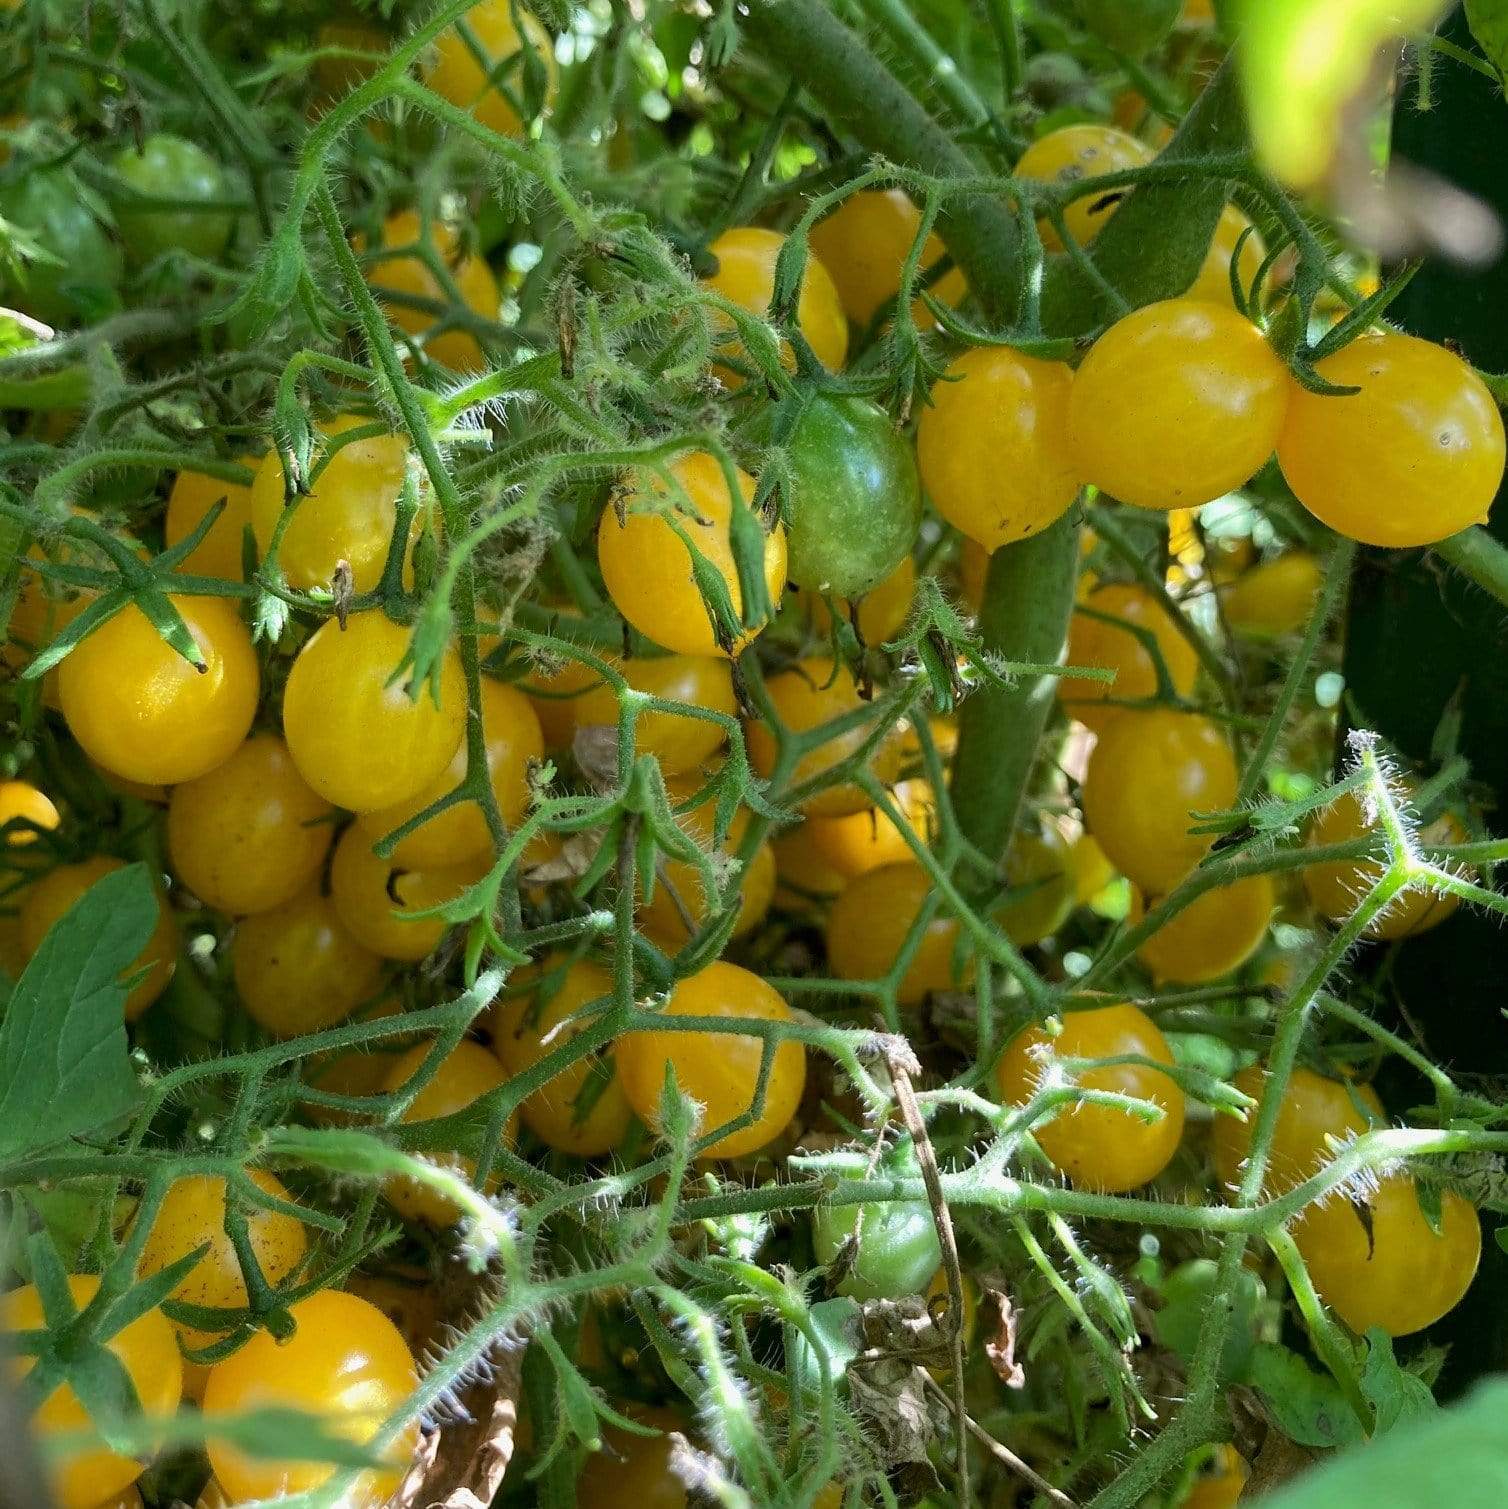 Blondkopfchen Cherry Tomato Seeds